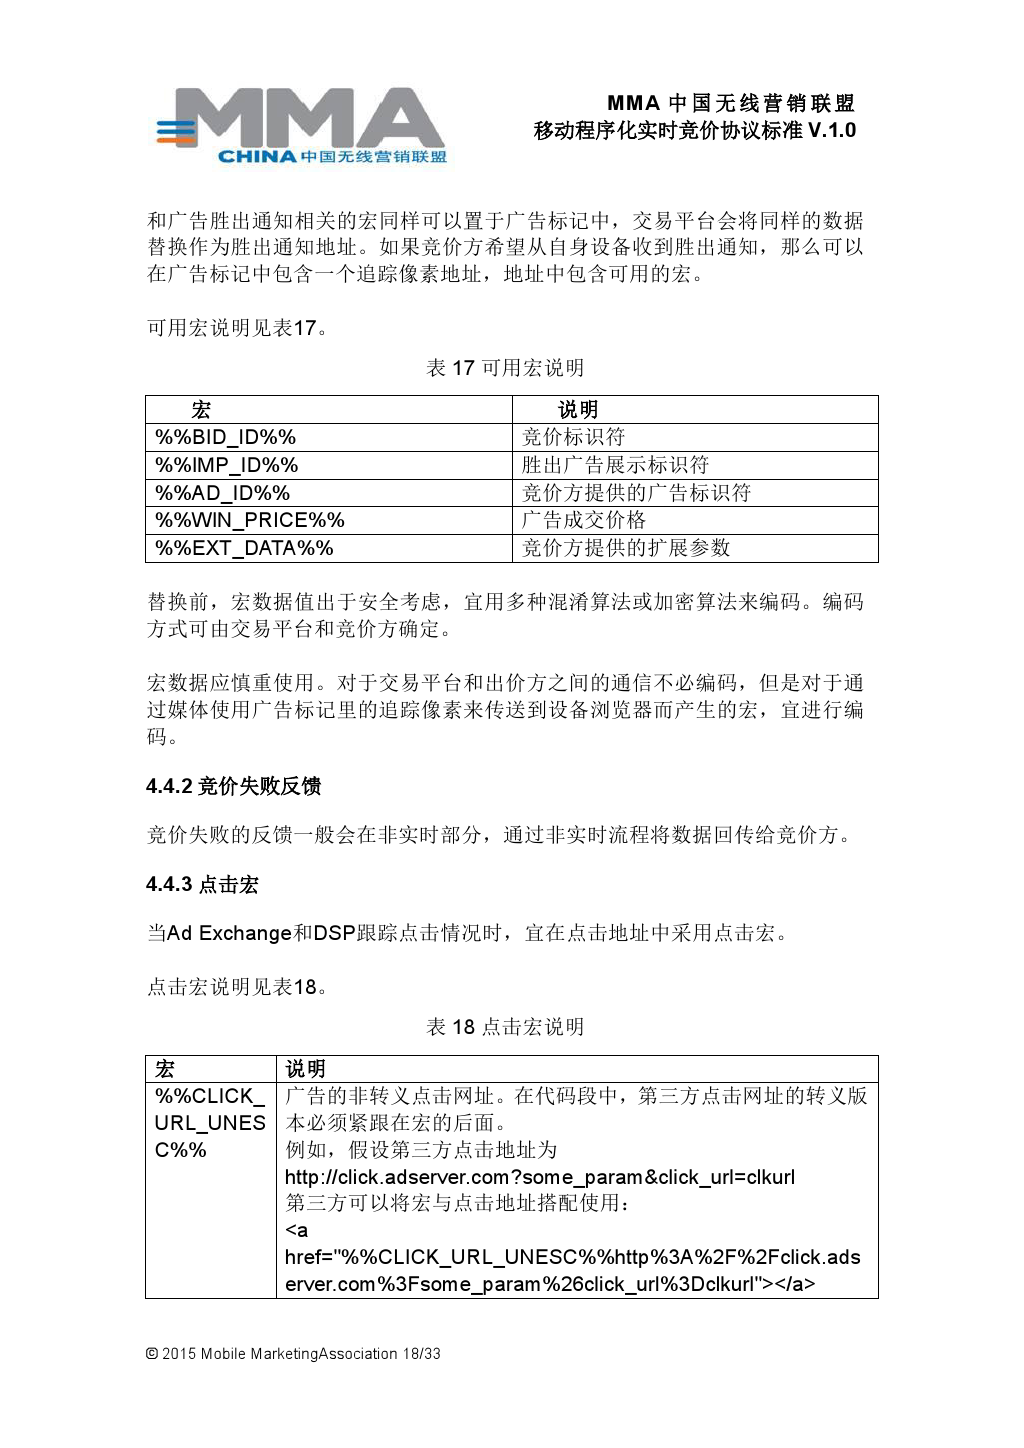 MMA中国无线营销联盟移动程序化实时竞价协议标准V.1.0_000019